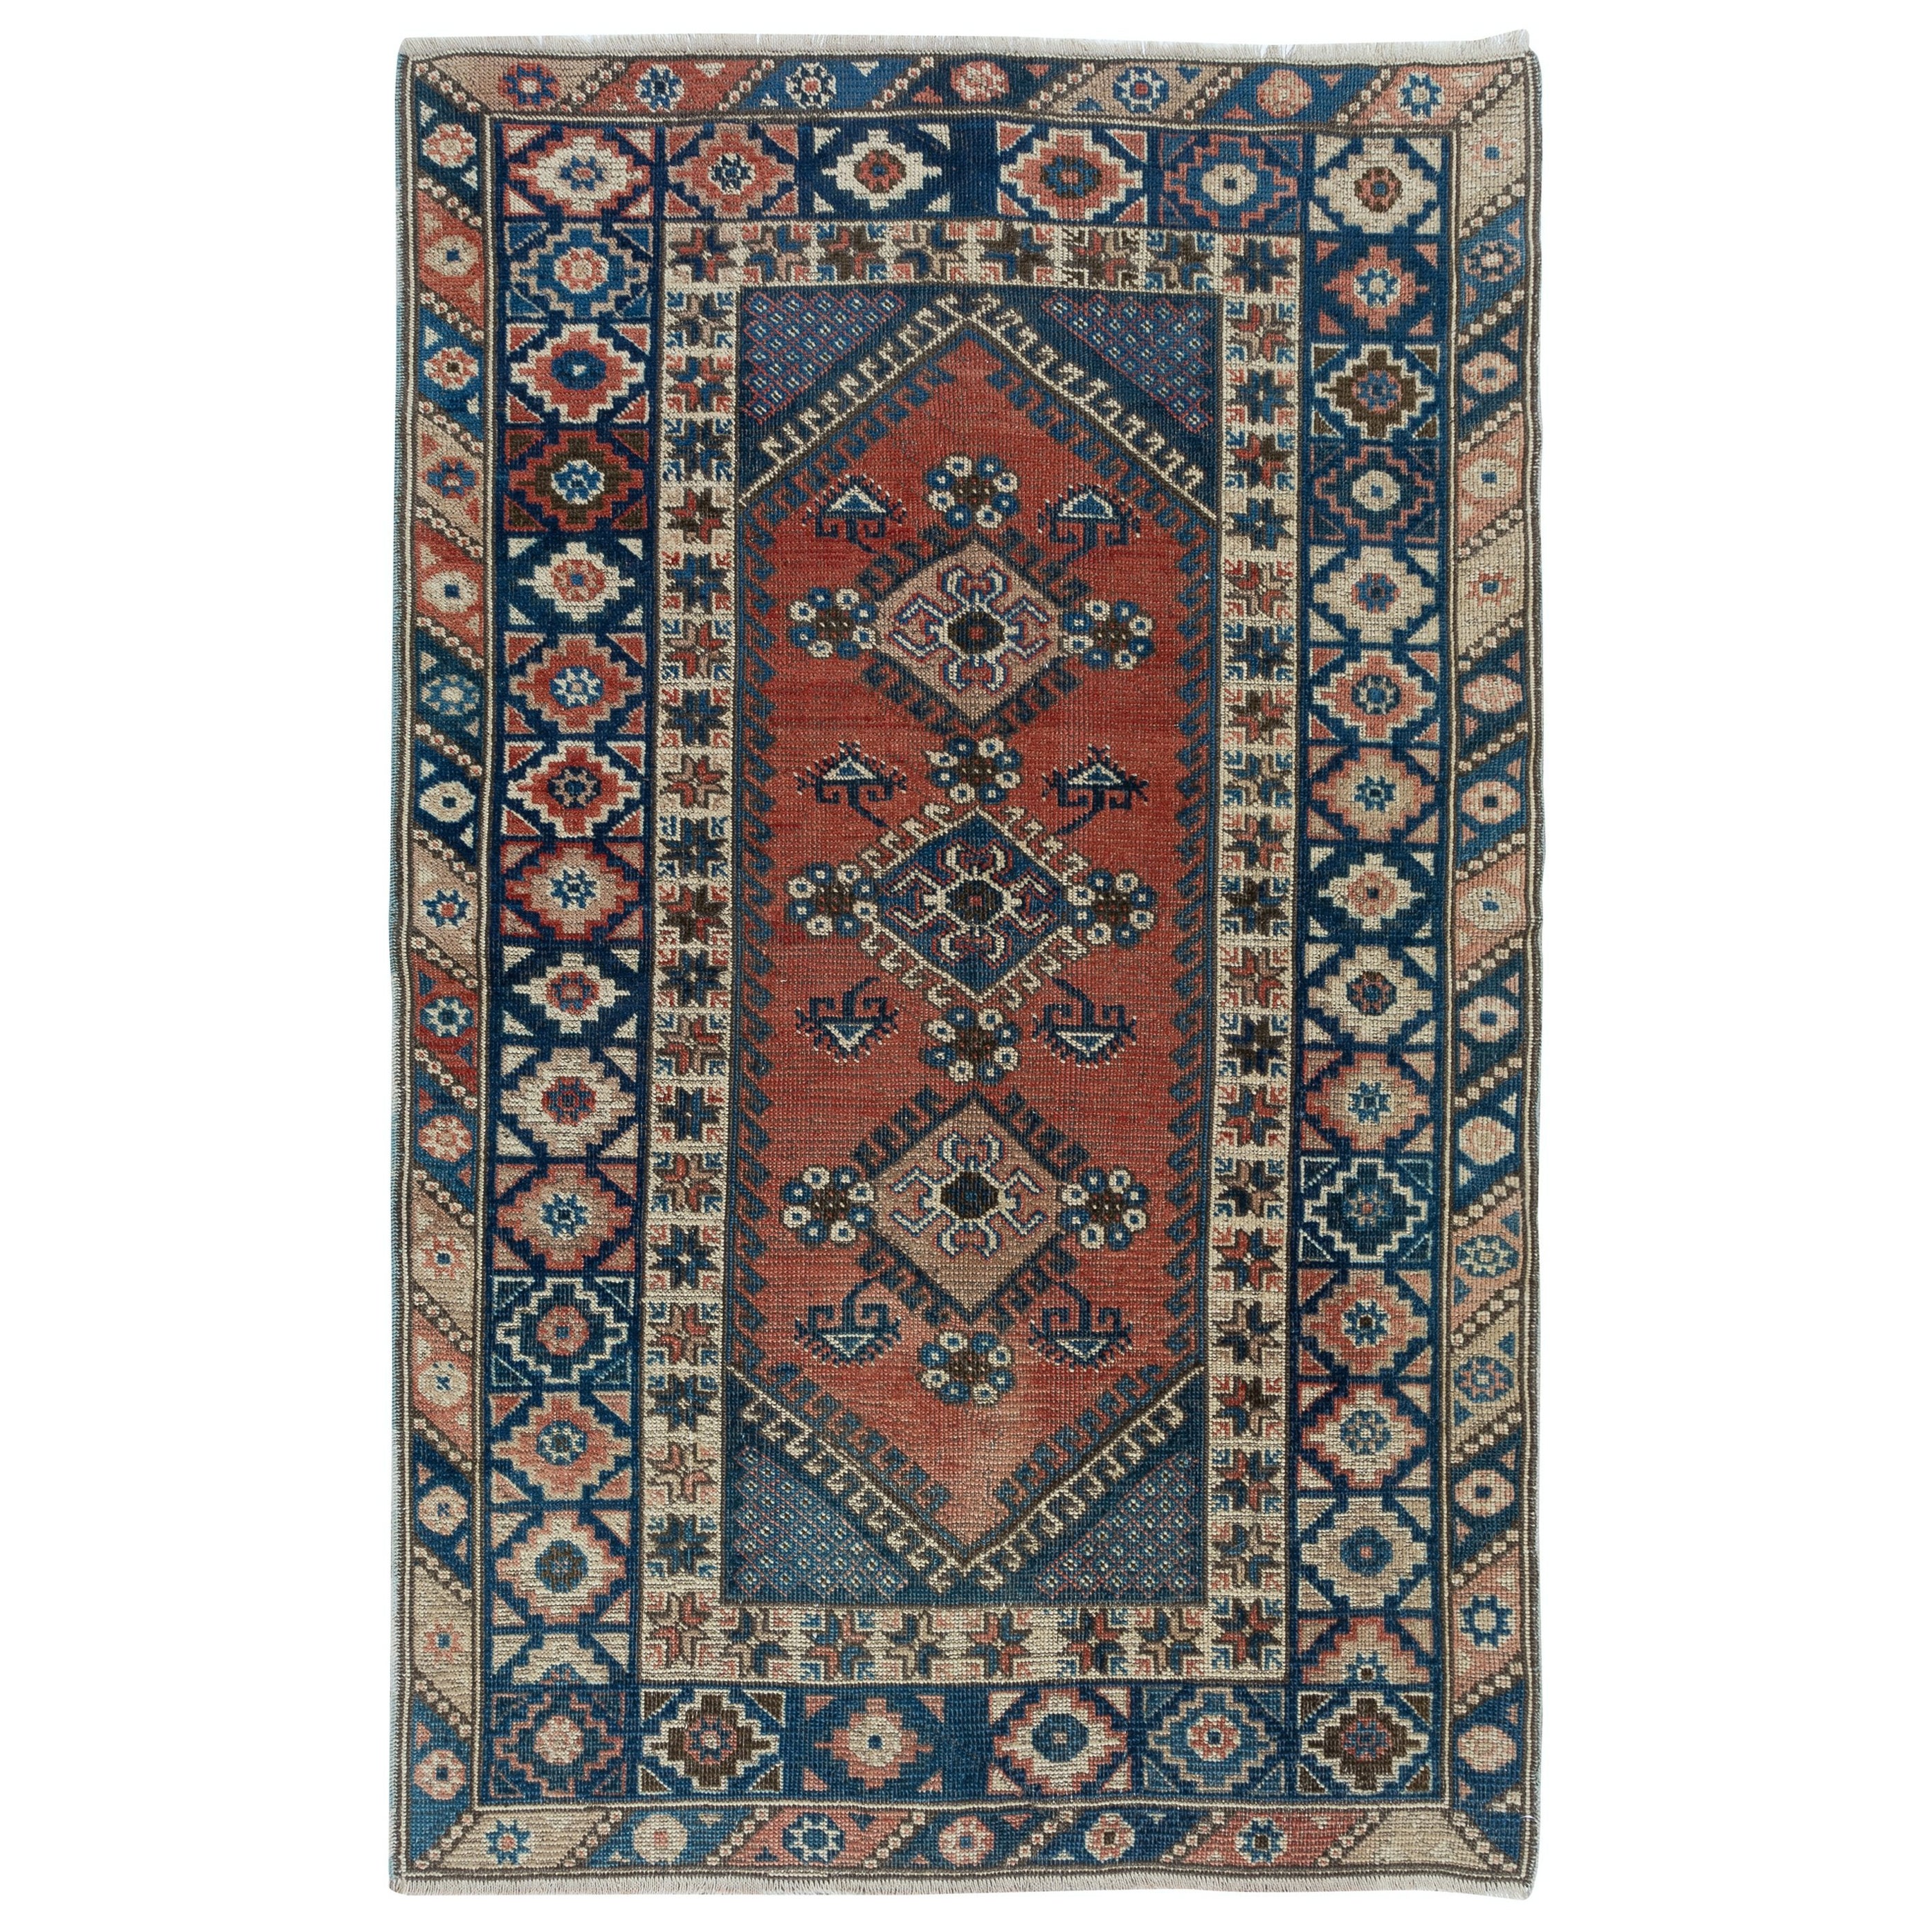 4x6 Ft Traditioneller handgefertigter türkischer Vintage-Teppich mit Medaillons, farbenfroher Teppich